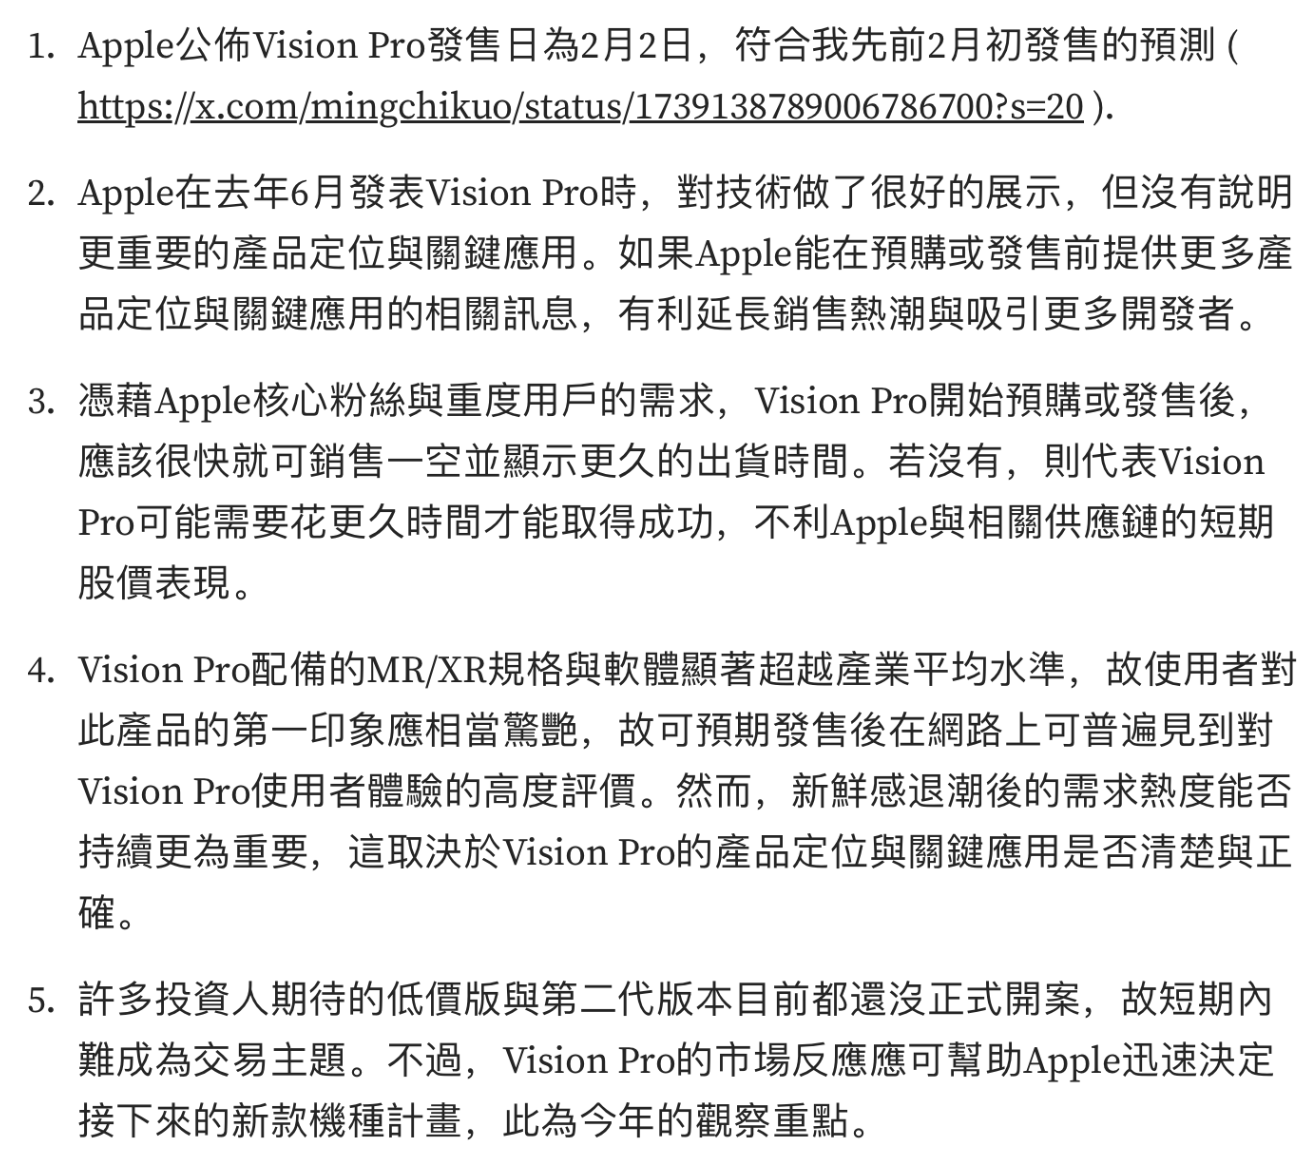 郭明�Z：苹果 Vision Pro 显著超越业界平均水准，但产品定位不明确